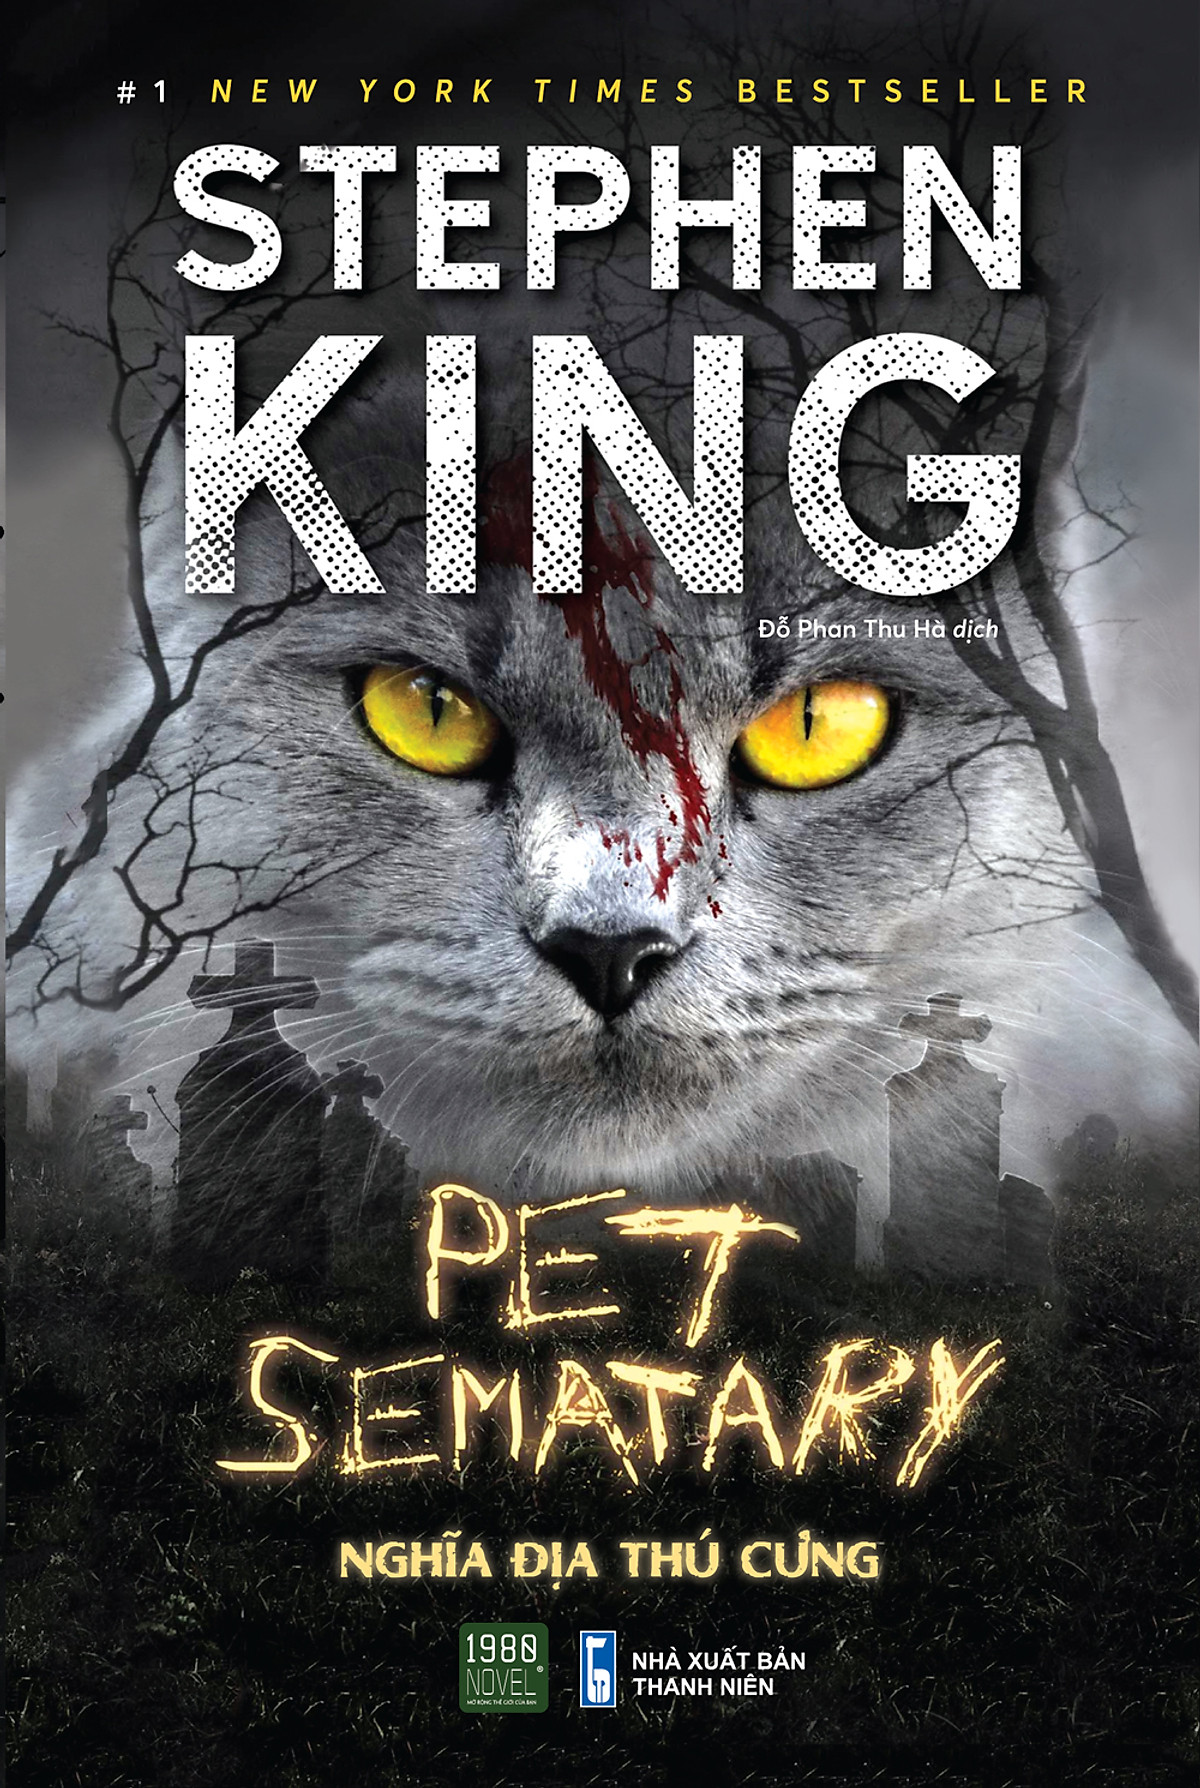 Pet Sematary - Nghĩa địa thú cưng - 1980books